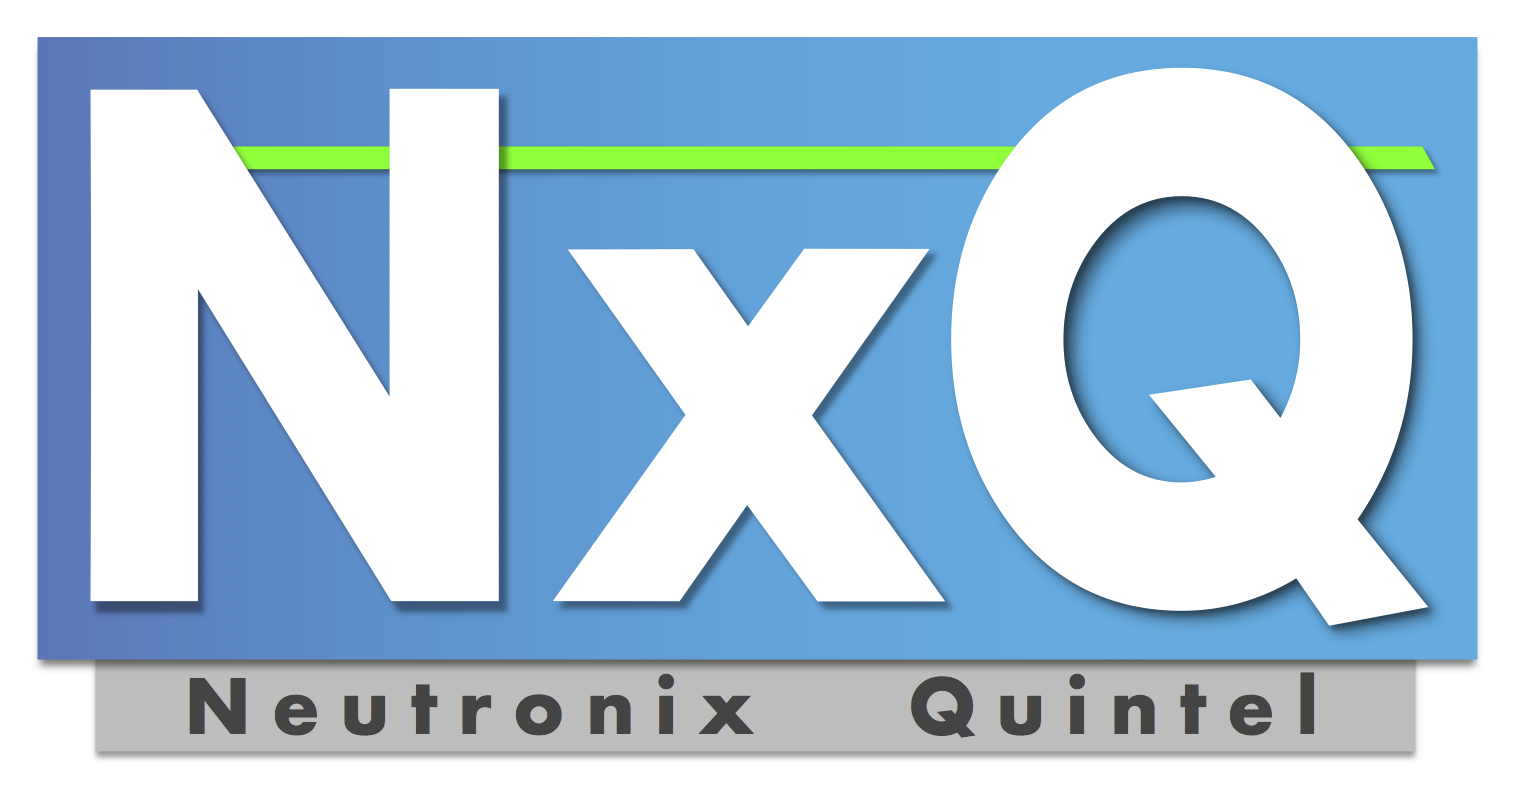 Neutronix-Quintel Microfab Summit 2022